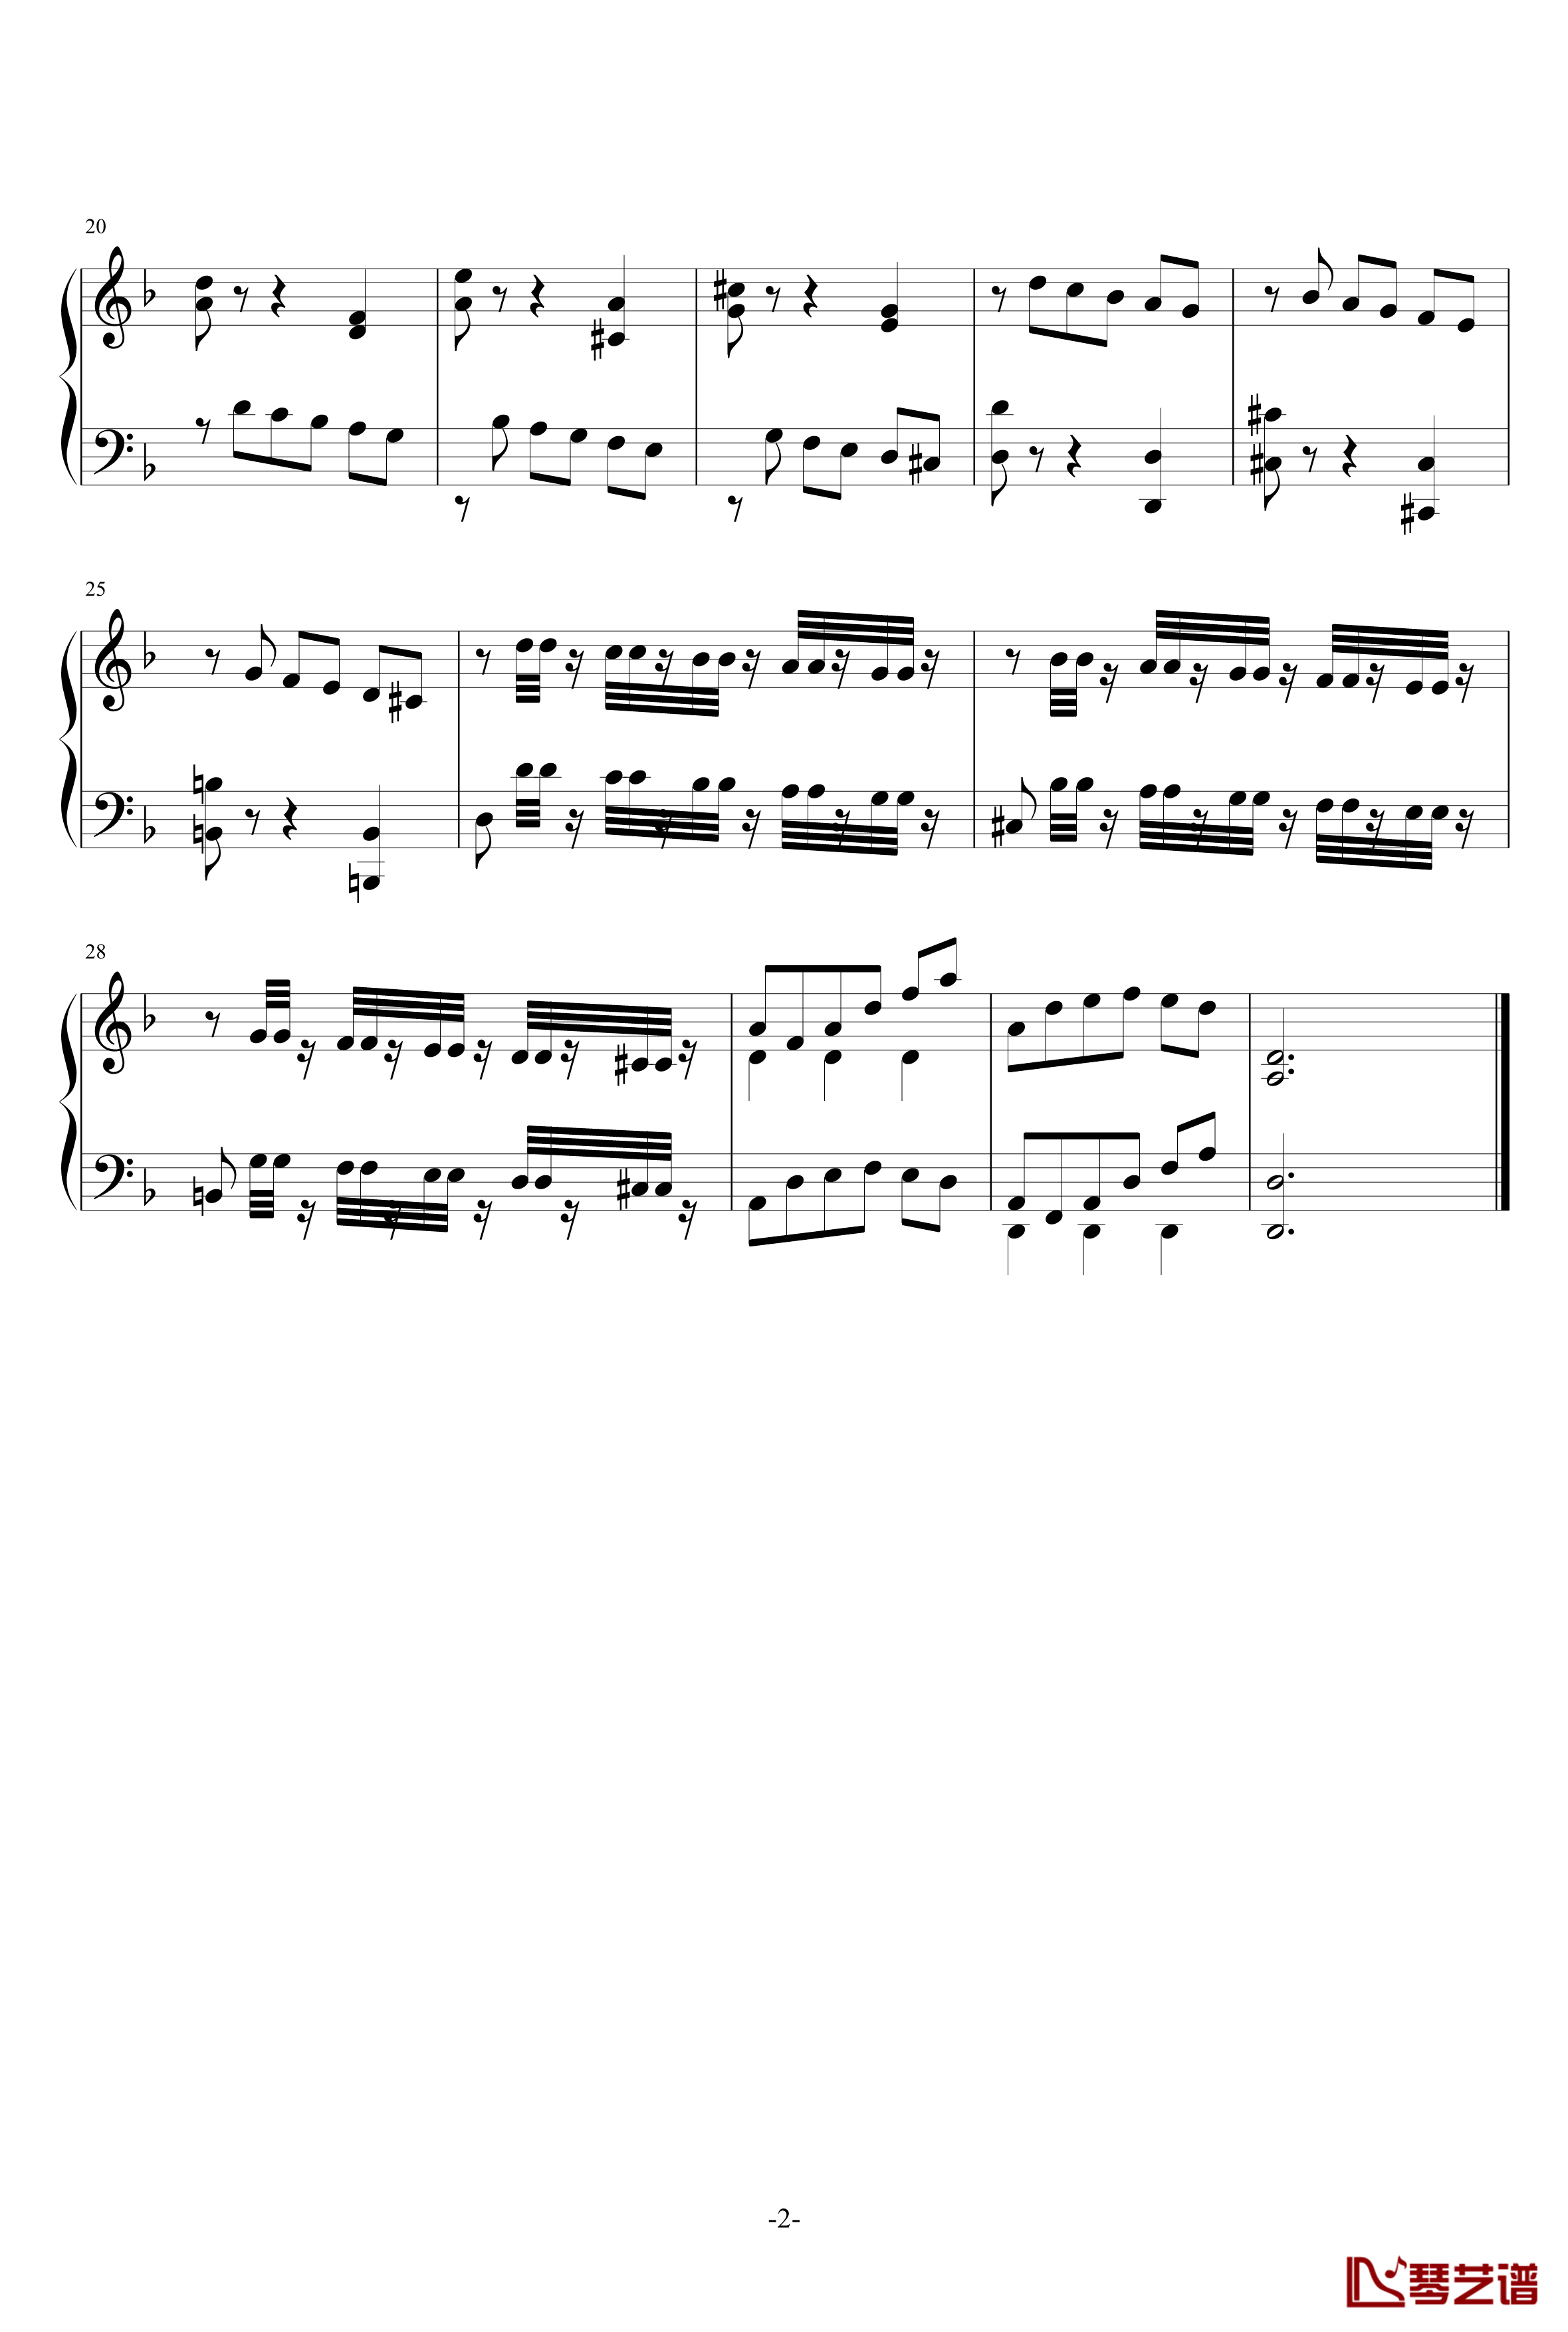 二部创意曲2钢琴谱-北平乐师2